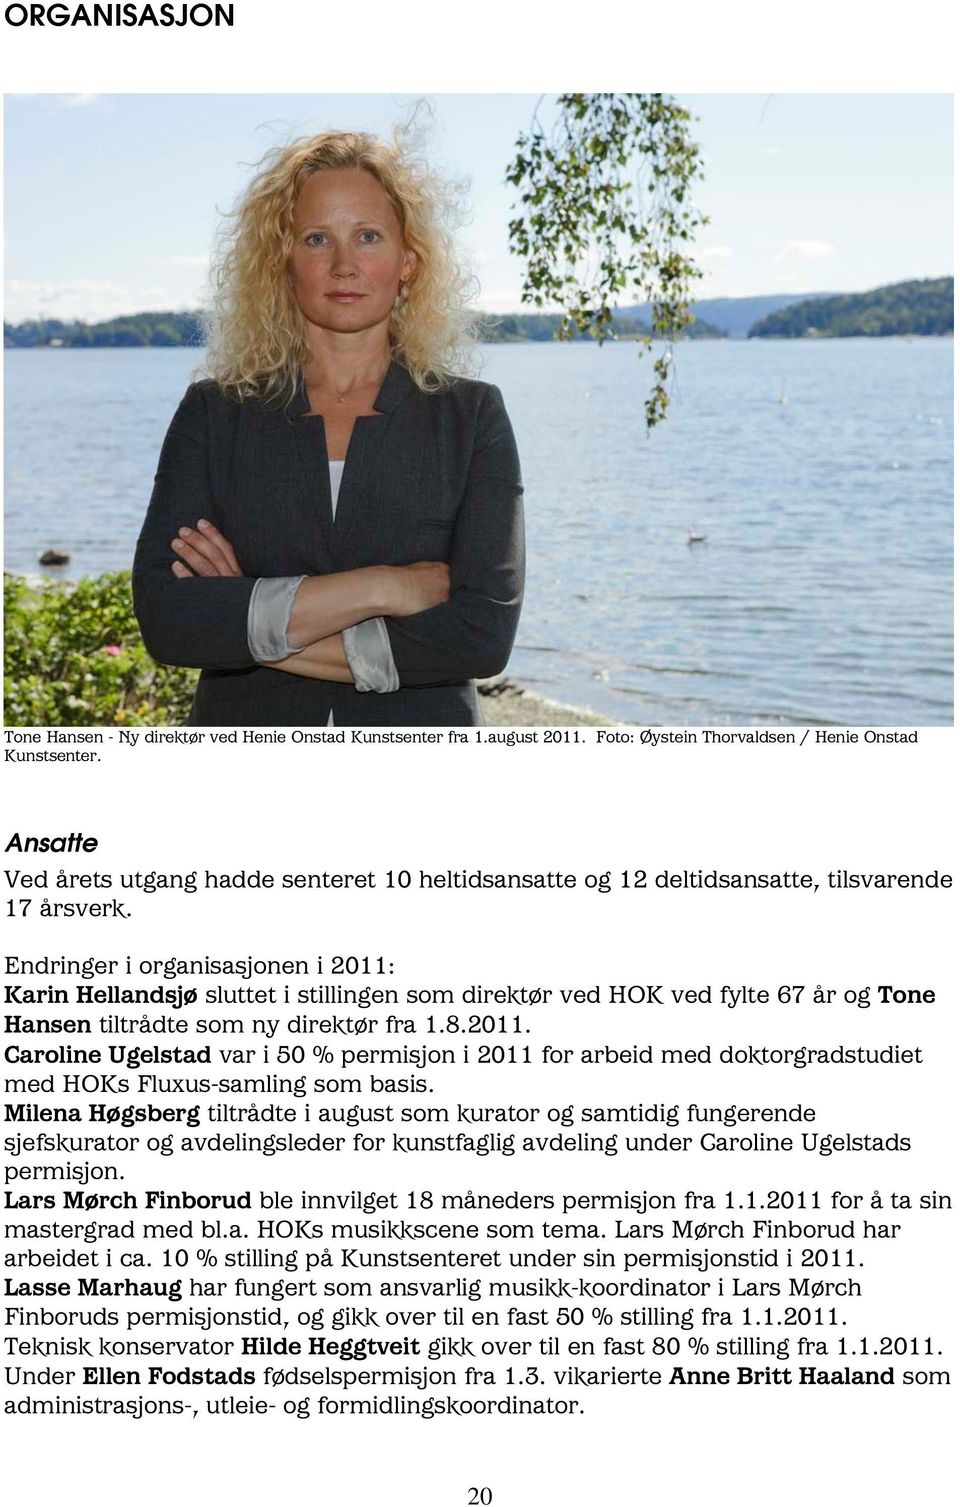 Endringer i organisasjonen i 2011: Karin Hellandsjø sluttet i stillingen som direktør ved HOK ved fylte 67 år og Tone Hansen tiltrådte som ny direktør fra 1.8.2011. Caroline Ugelstad var i 50 % permisjon i 2011 for arbeid med doktorgradstudiet med HOKs Fluxus-samling som basis.